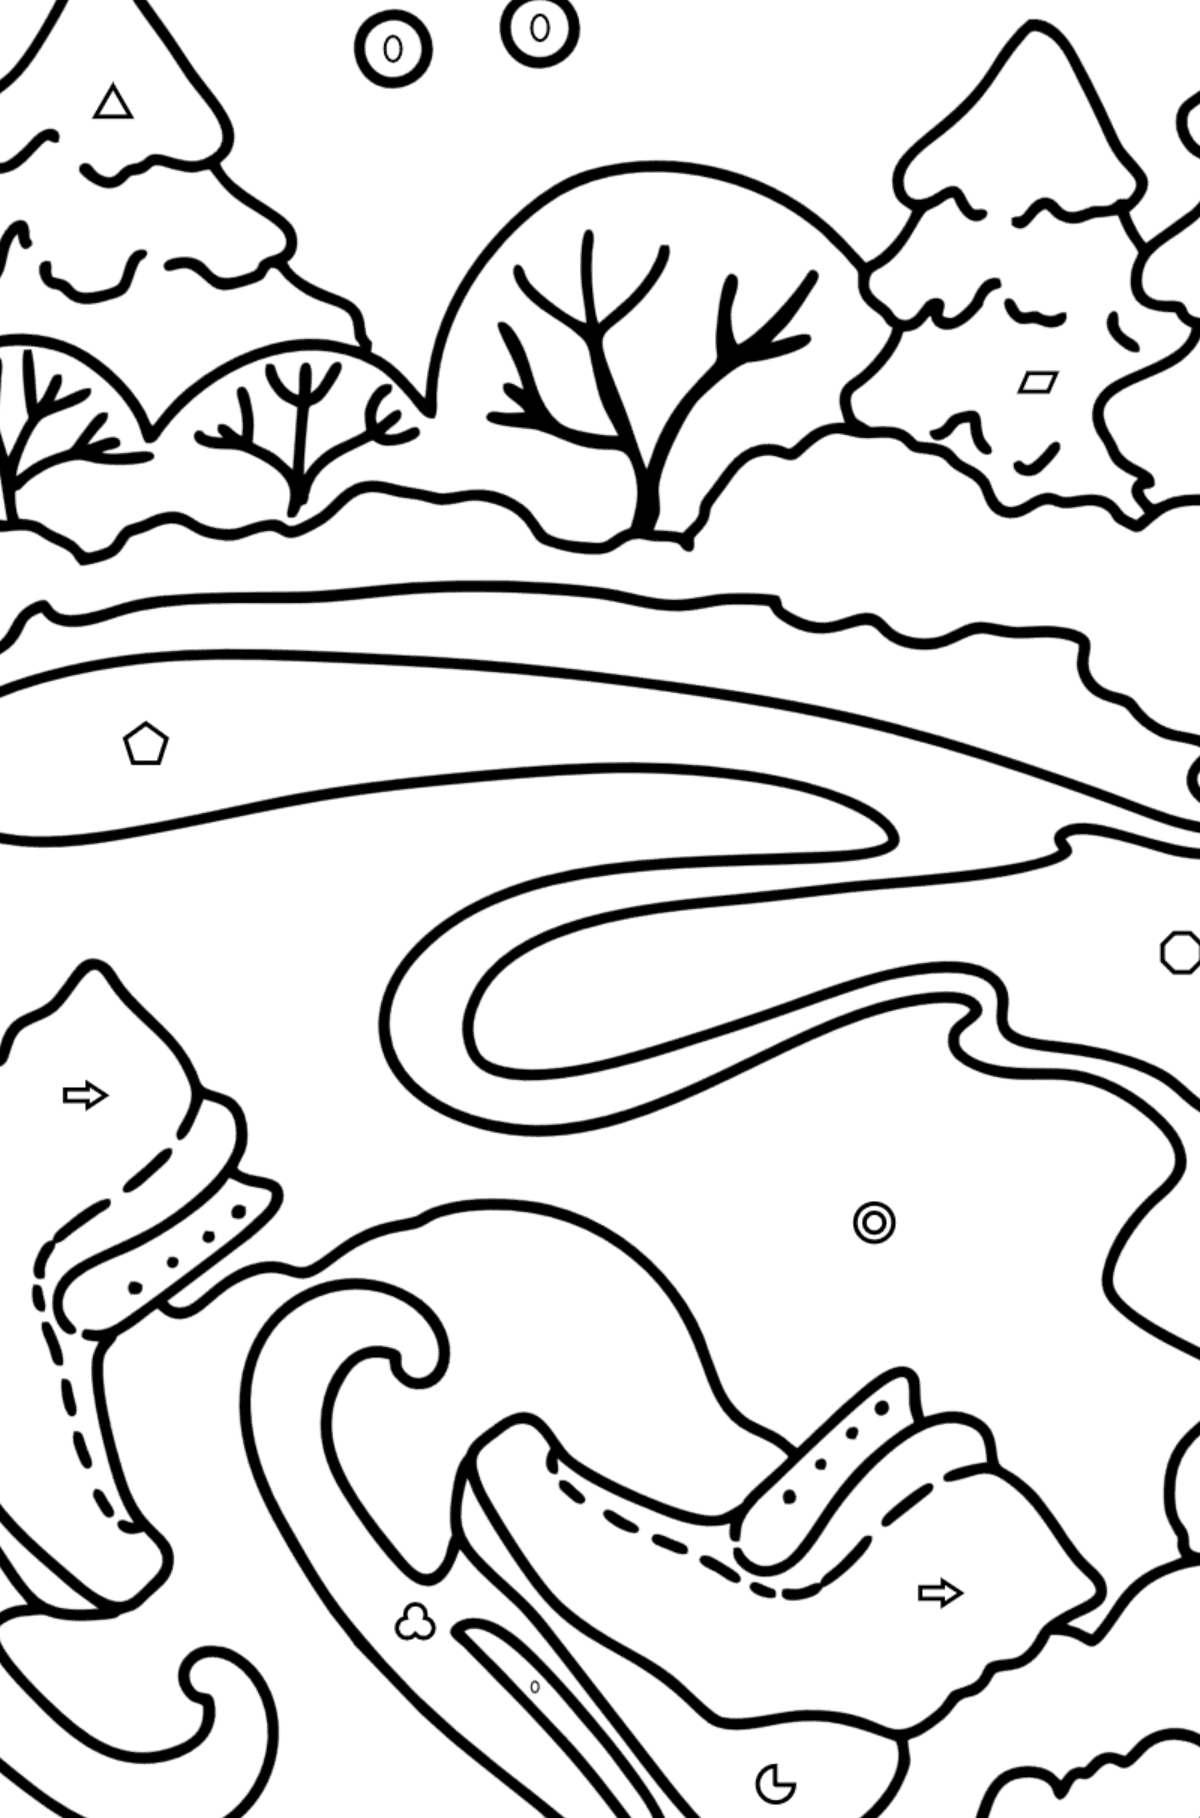 Desenho para colorir - Inverno e patins - Colorir por Formas Geométricas para Crianças